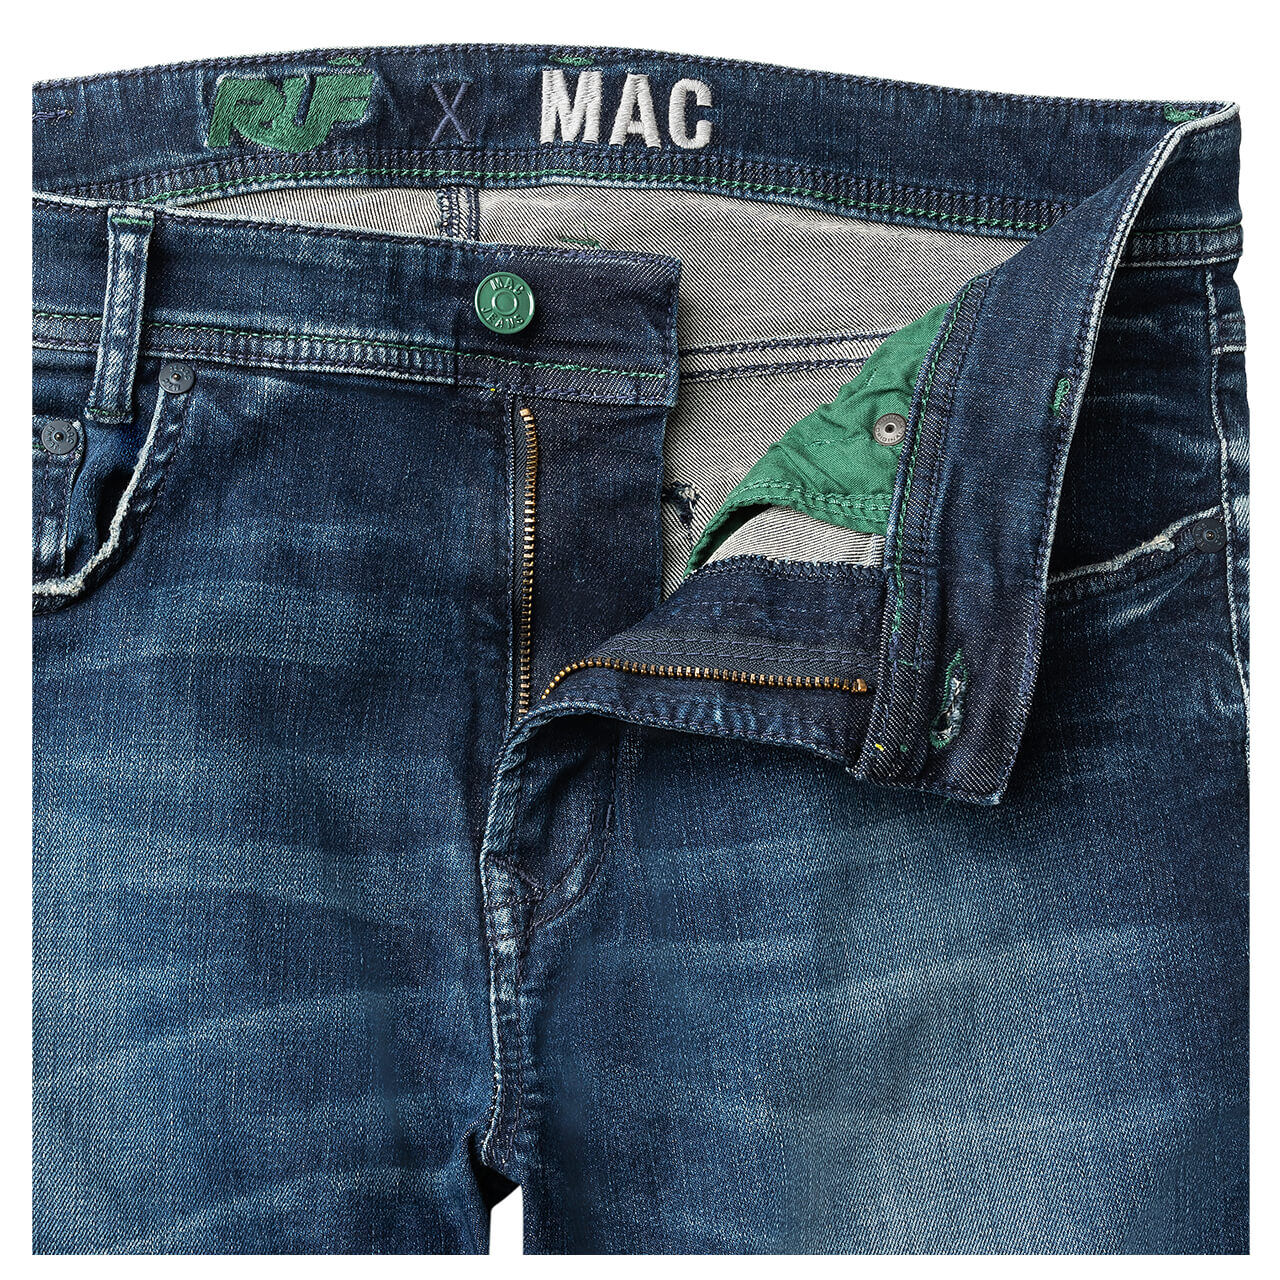 MAC Jeans Flexx für Herren in Dunkelblau verwaschen, FarbNr.: H665